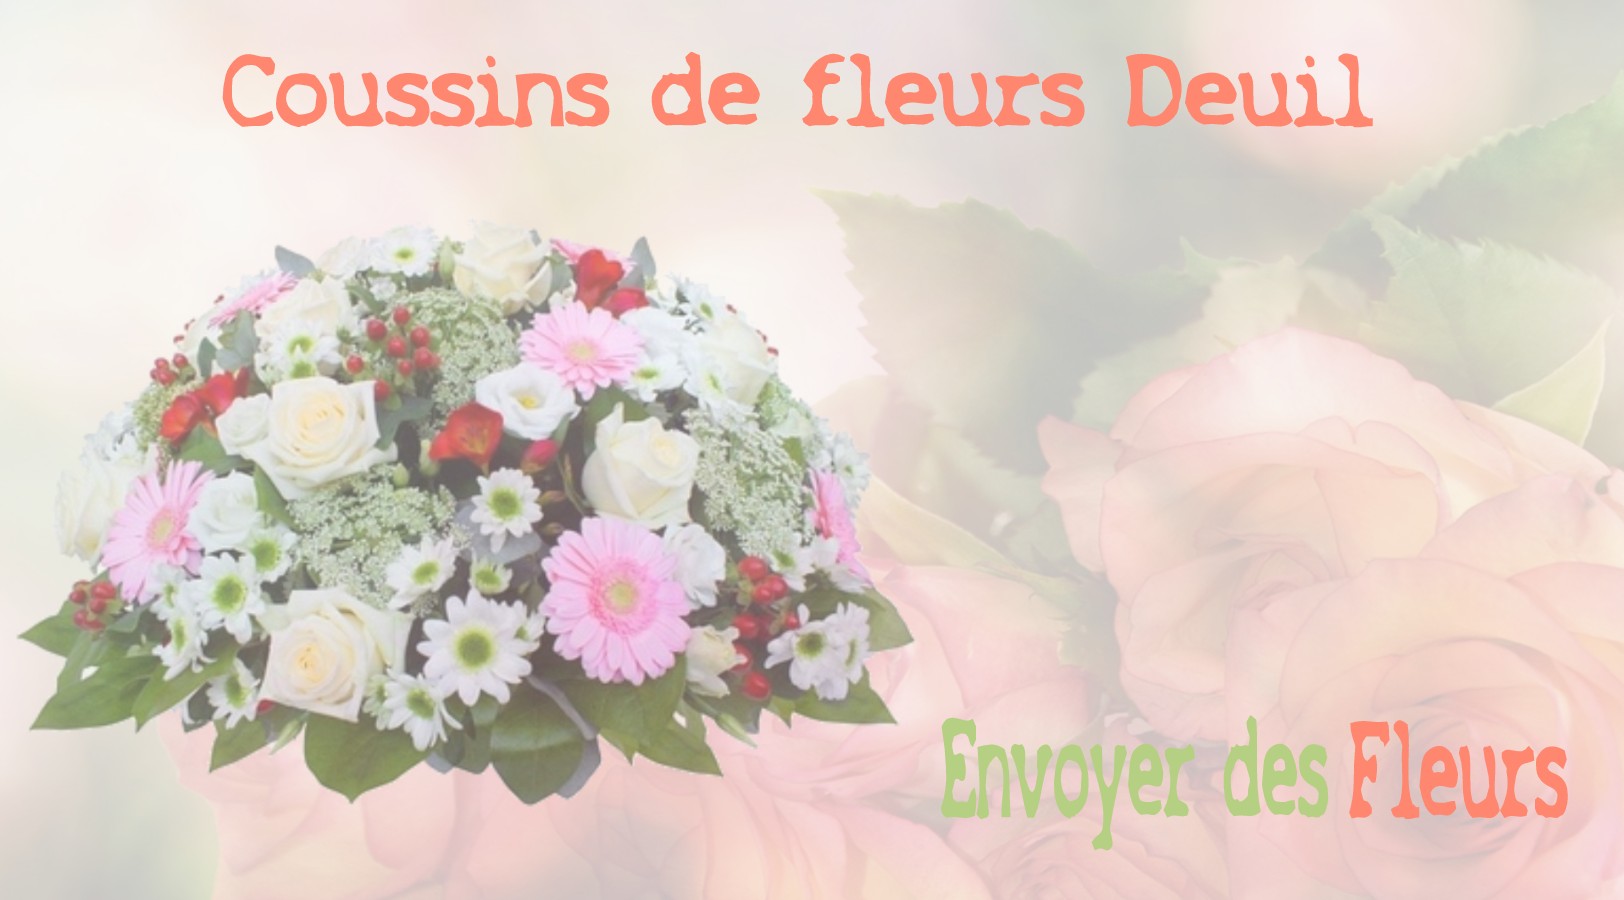 Les coussins de fleurs deuil - LIVRAISON FLEURS DEUIL A CLICHY-SOUS-BOIS 93